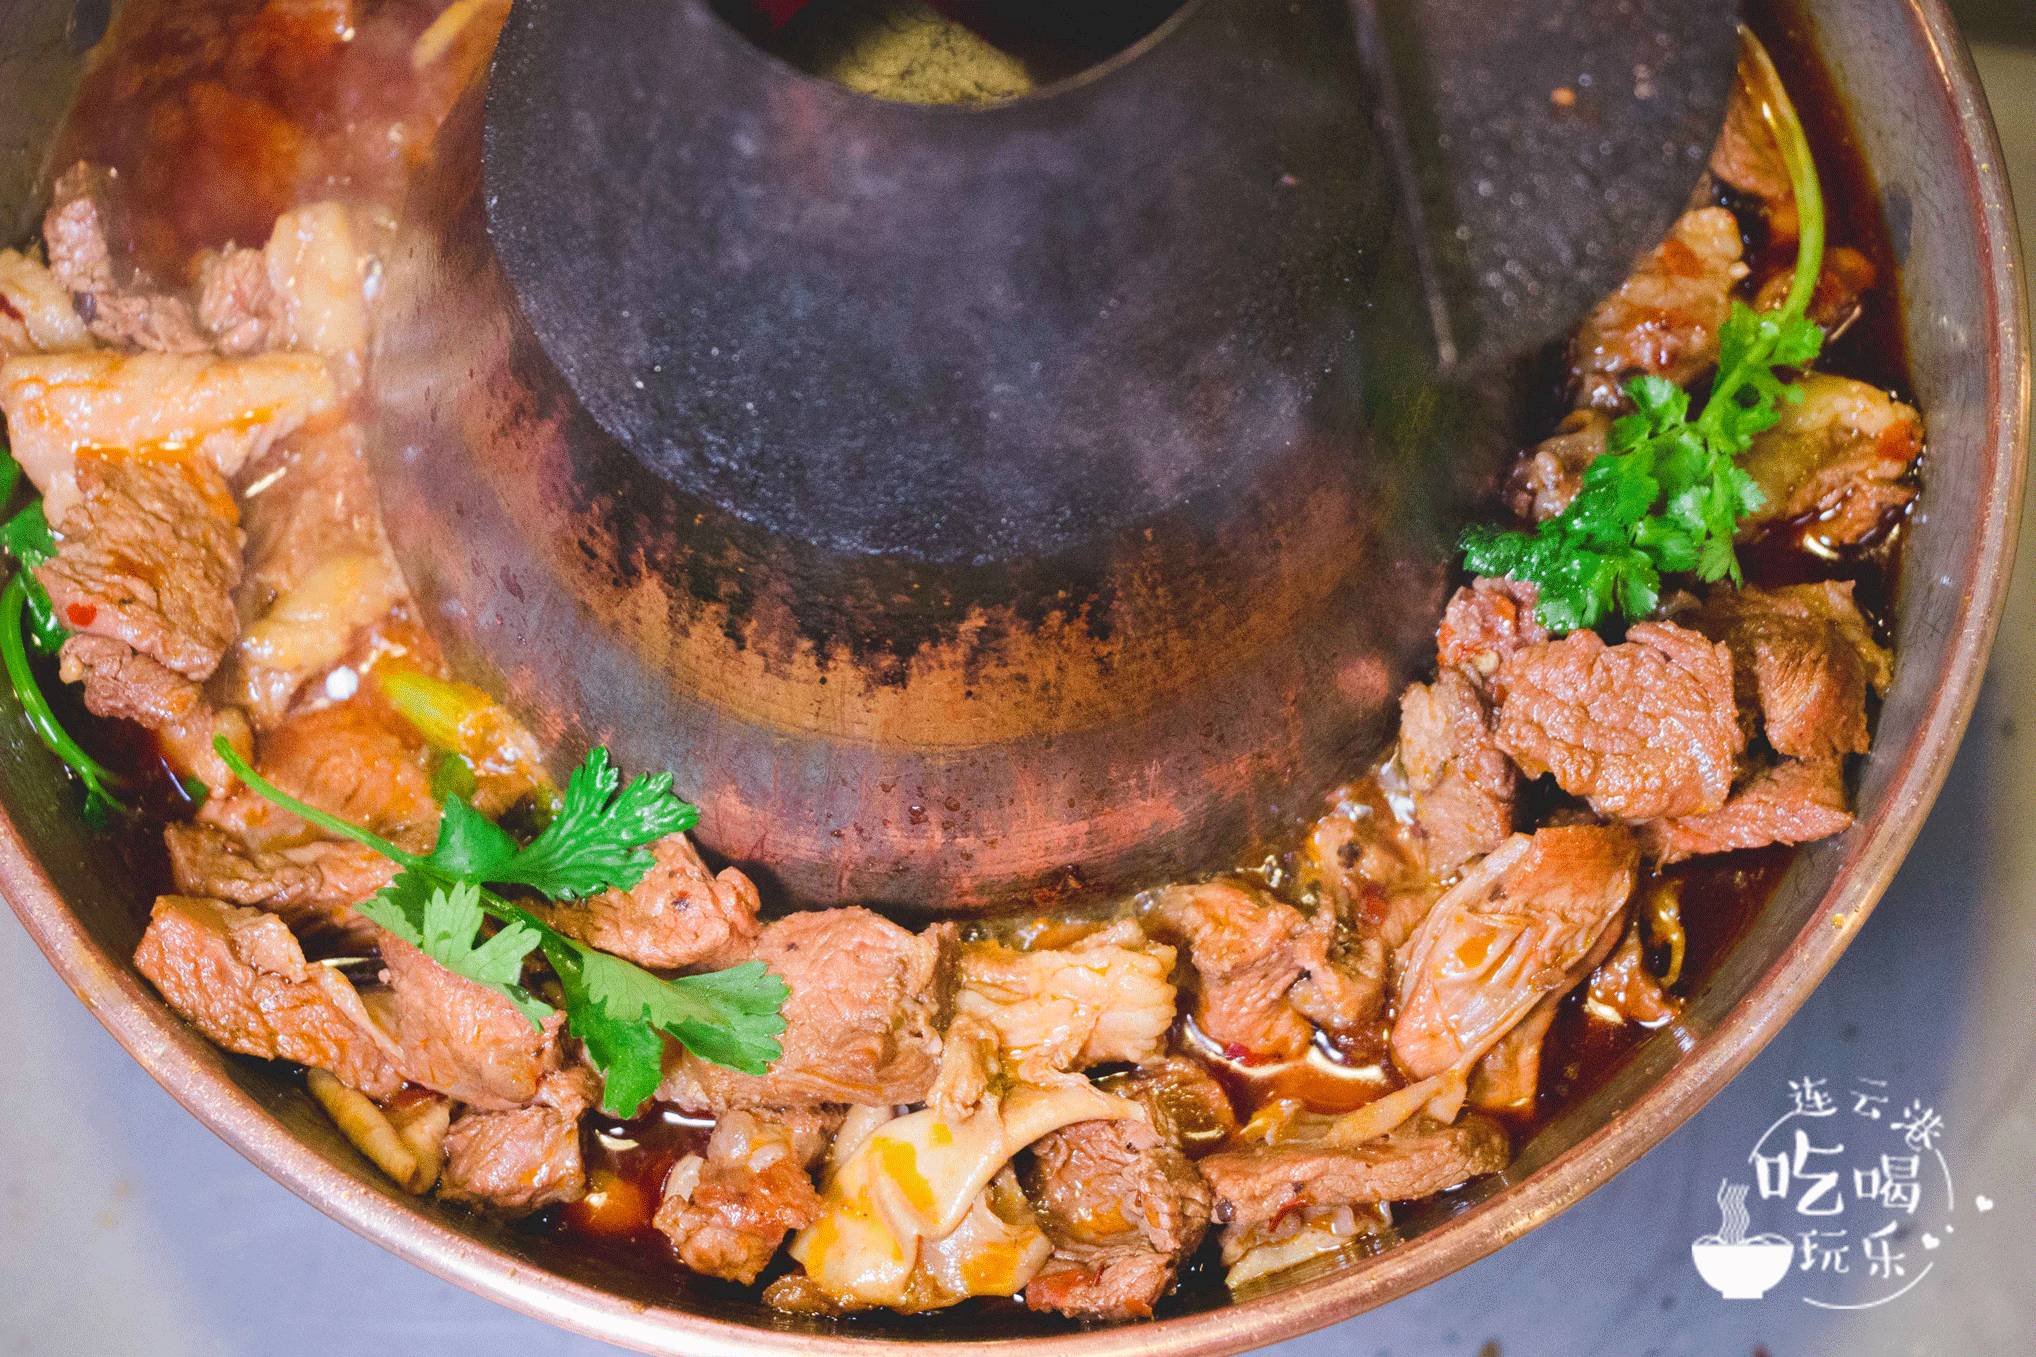 羊肉火锅大铜锅里满满的一大锅肉,多到几乎溢出来